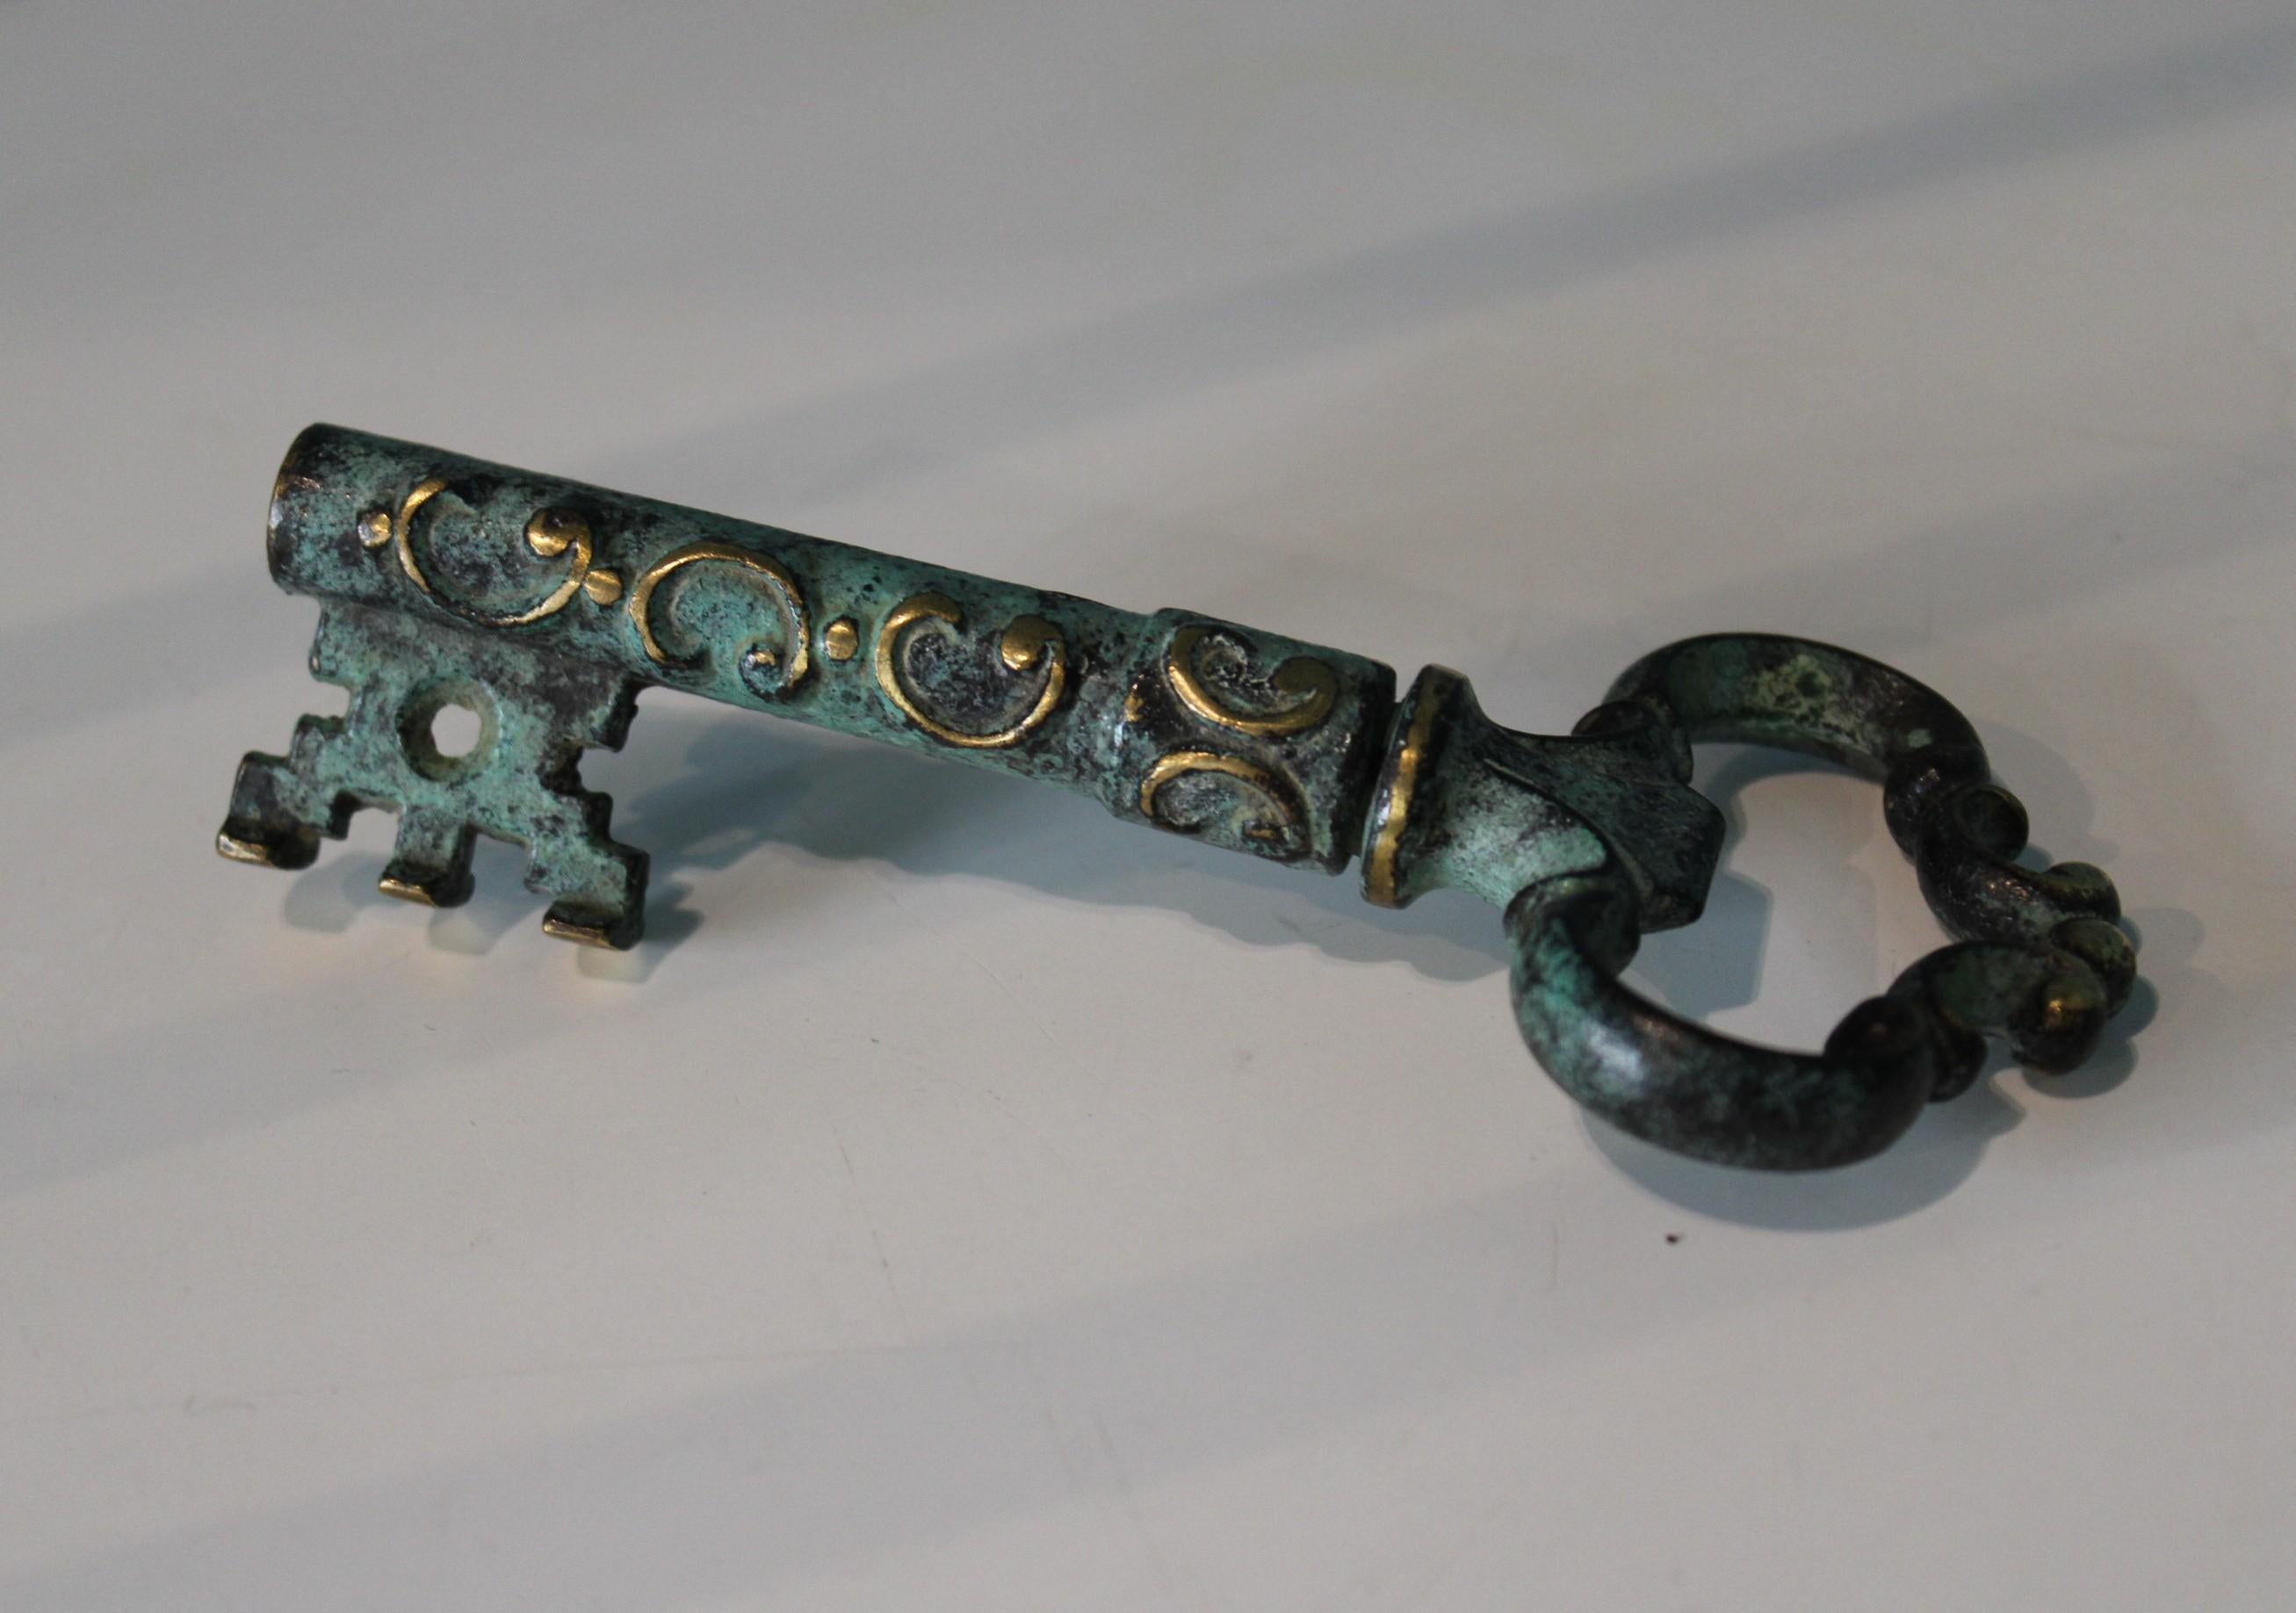 Vintage corkscrew and bottle opener, key shape.